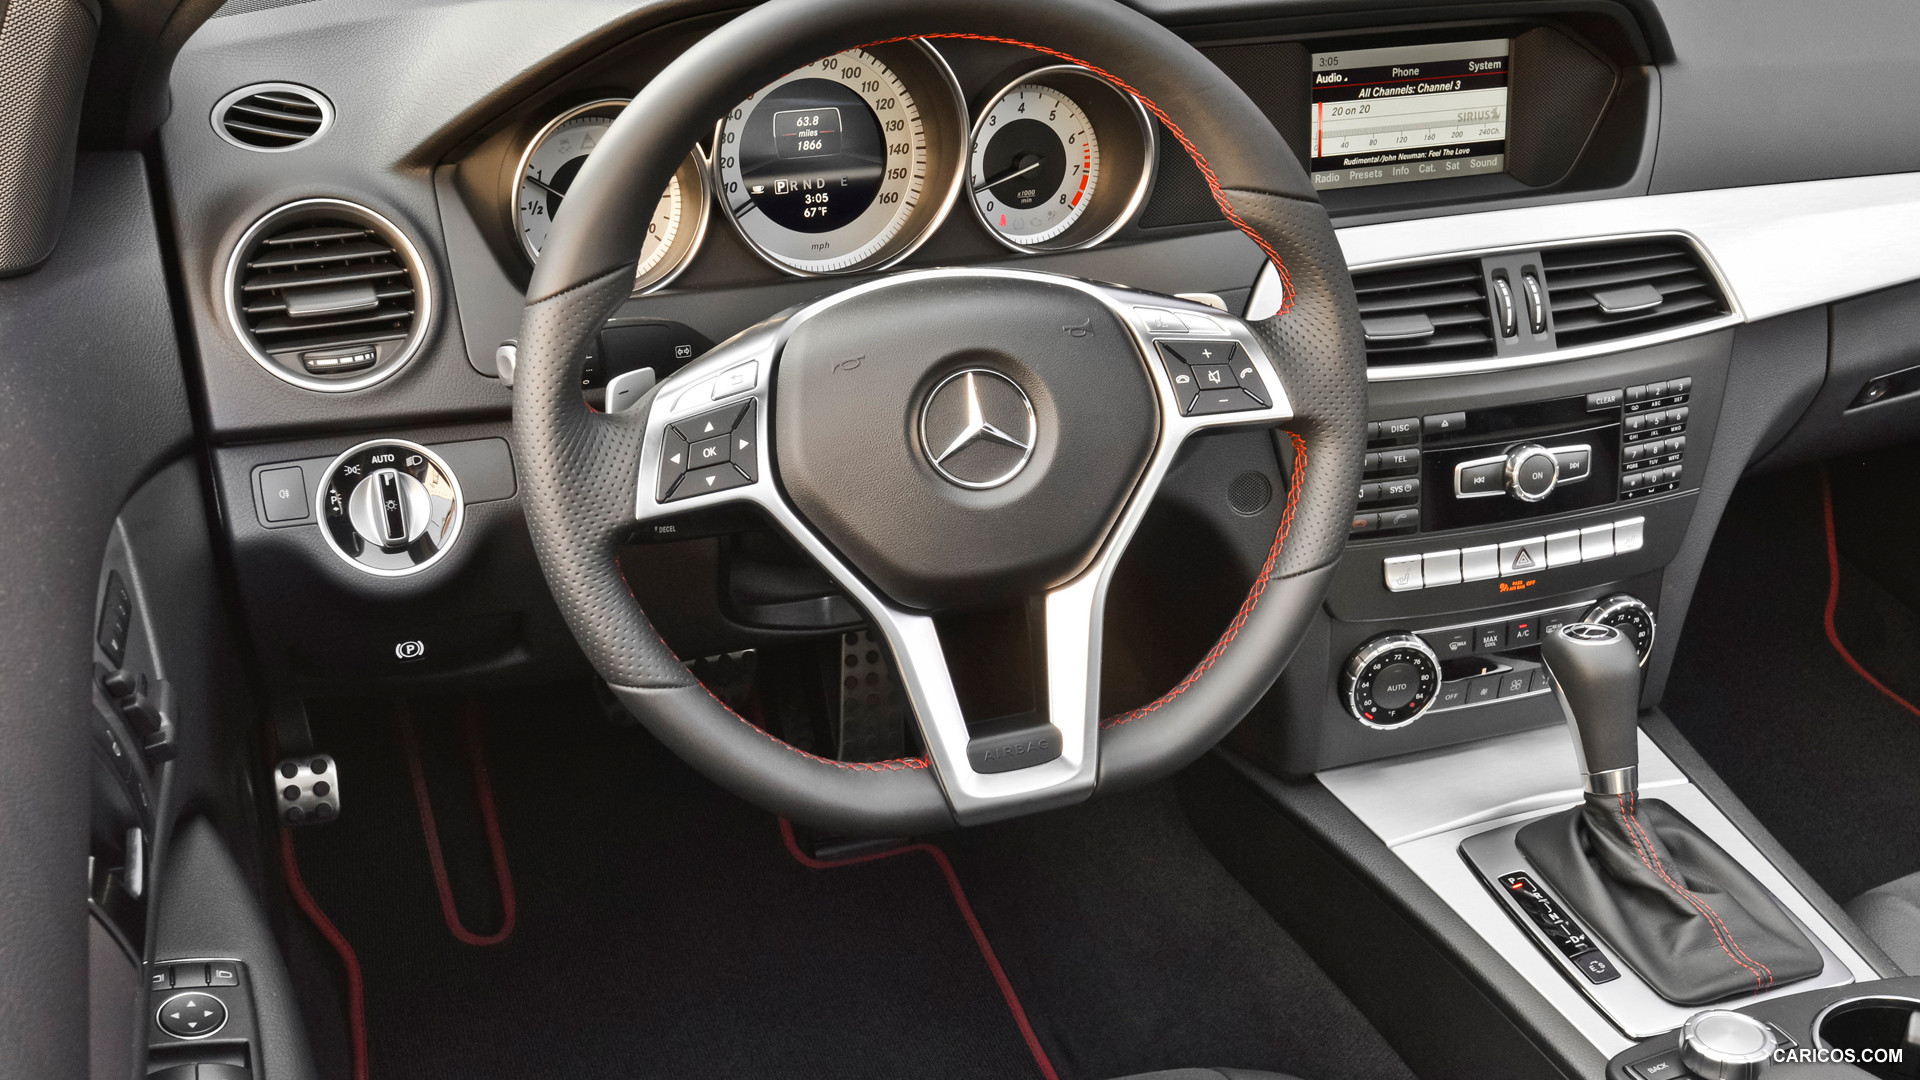 Mercedes Benz C250 Coupe 2013 Interior Caricos 8357